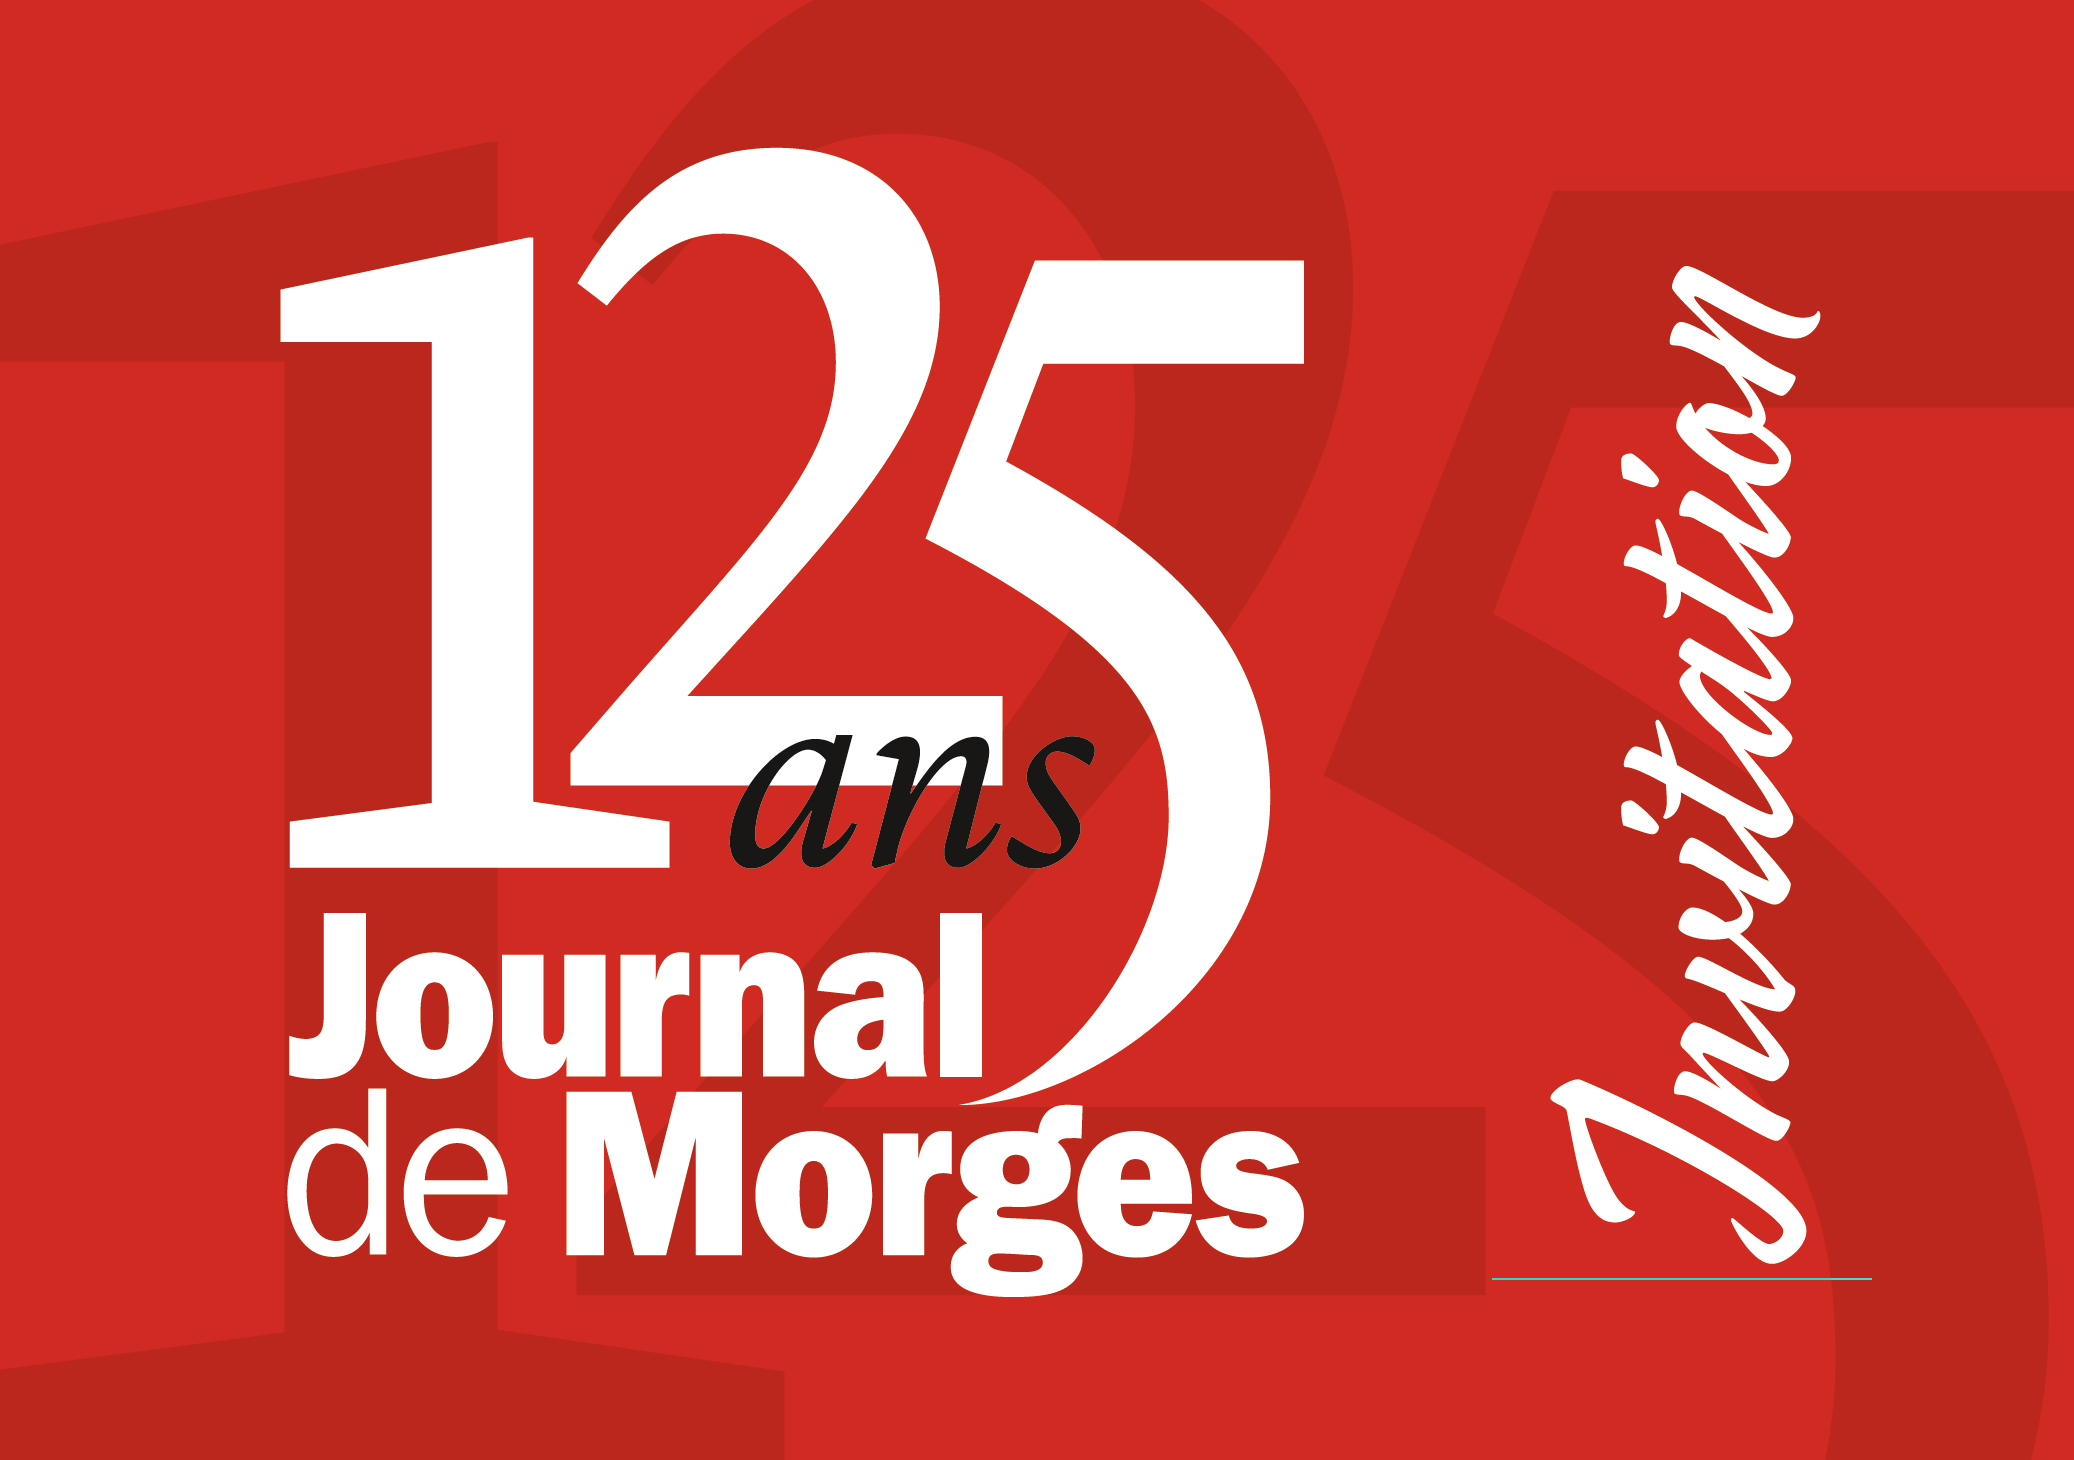 Journal de Morges - offre publicitaire